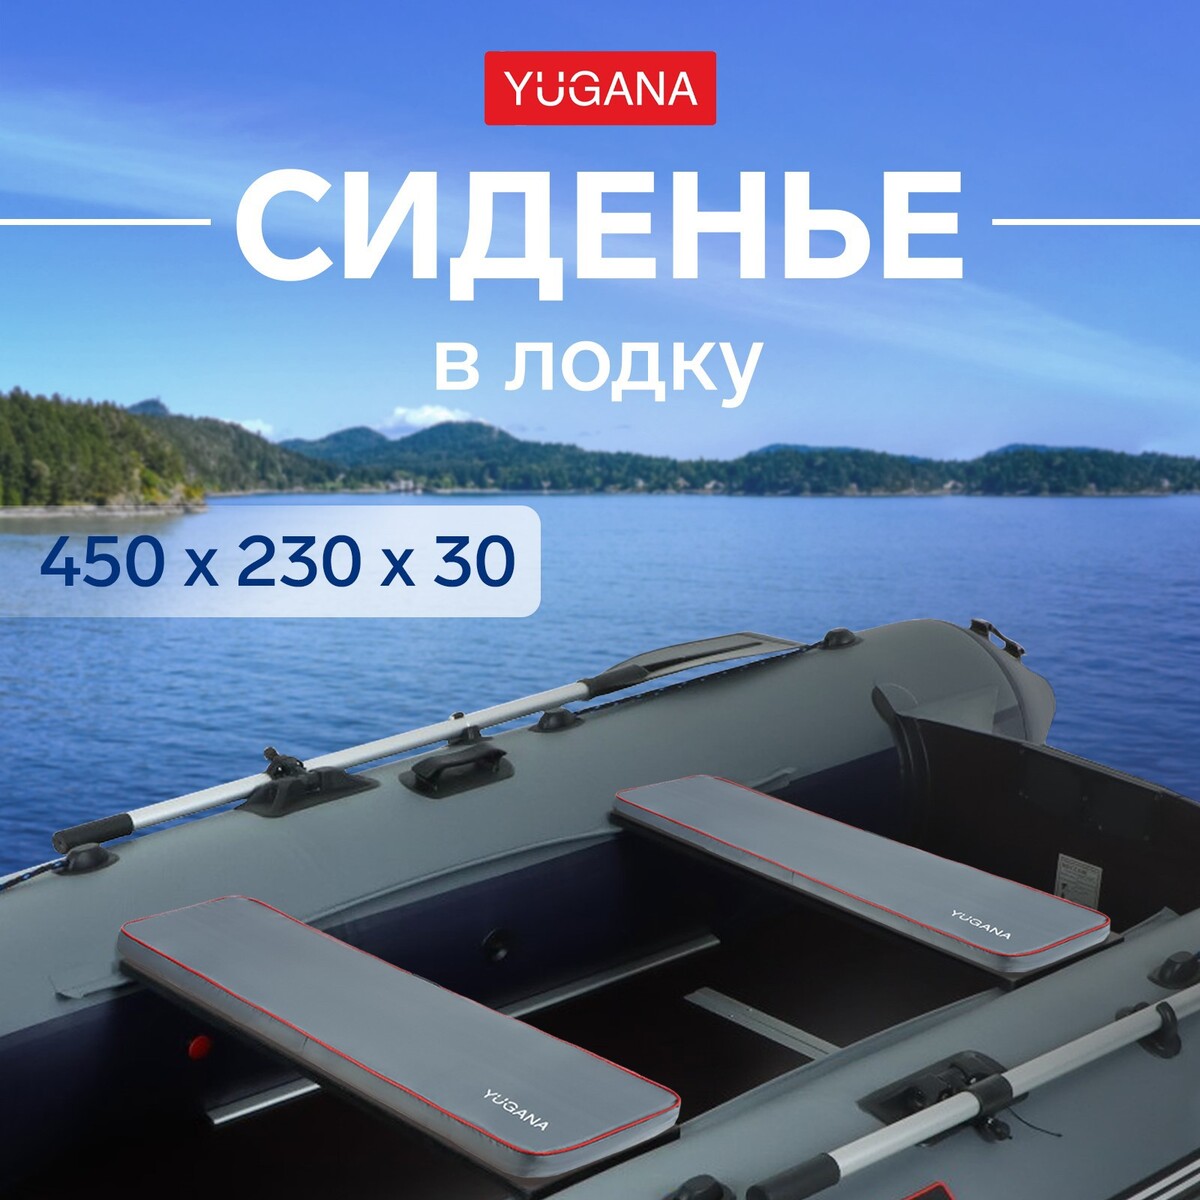 Сиденье в лодку yugana, цвет серый, 450 x 230 x 30 мм сиденье в лодку yugana серый 450 x 230 x 30 мм